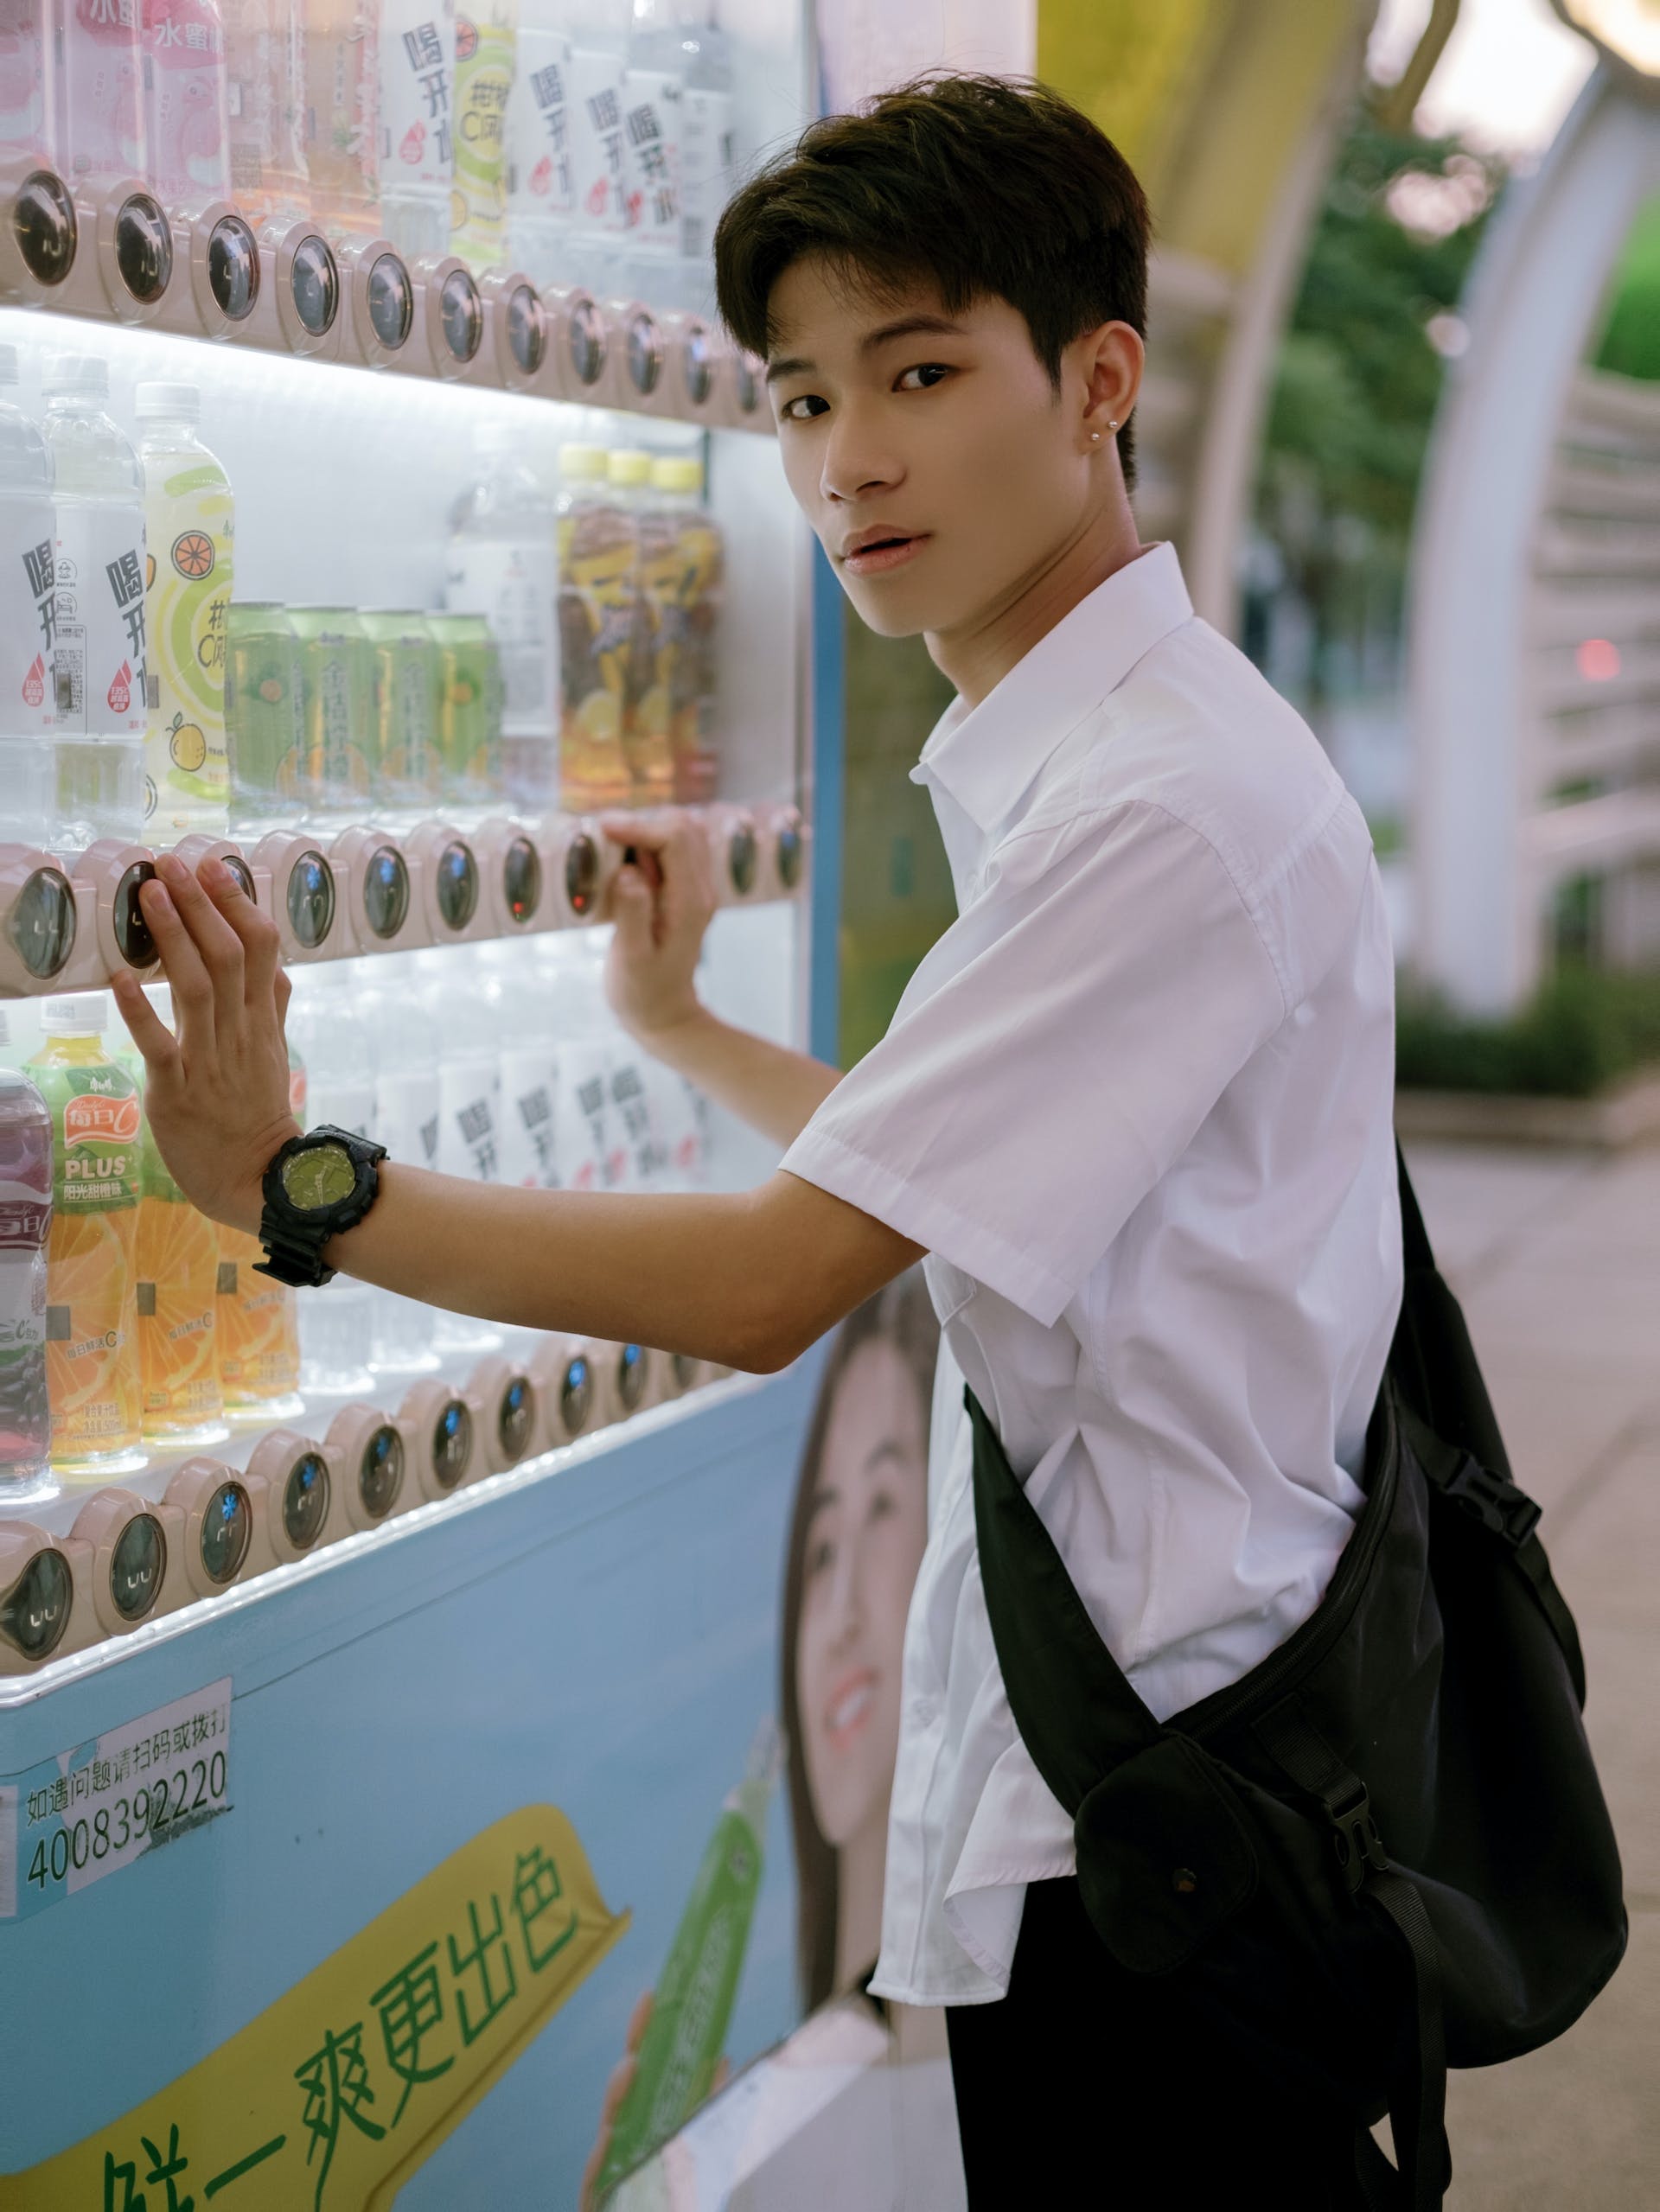 Un garçon à côté d'un distributeur automatique | Source : Pexels